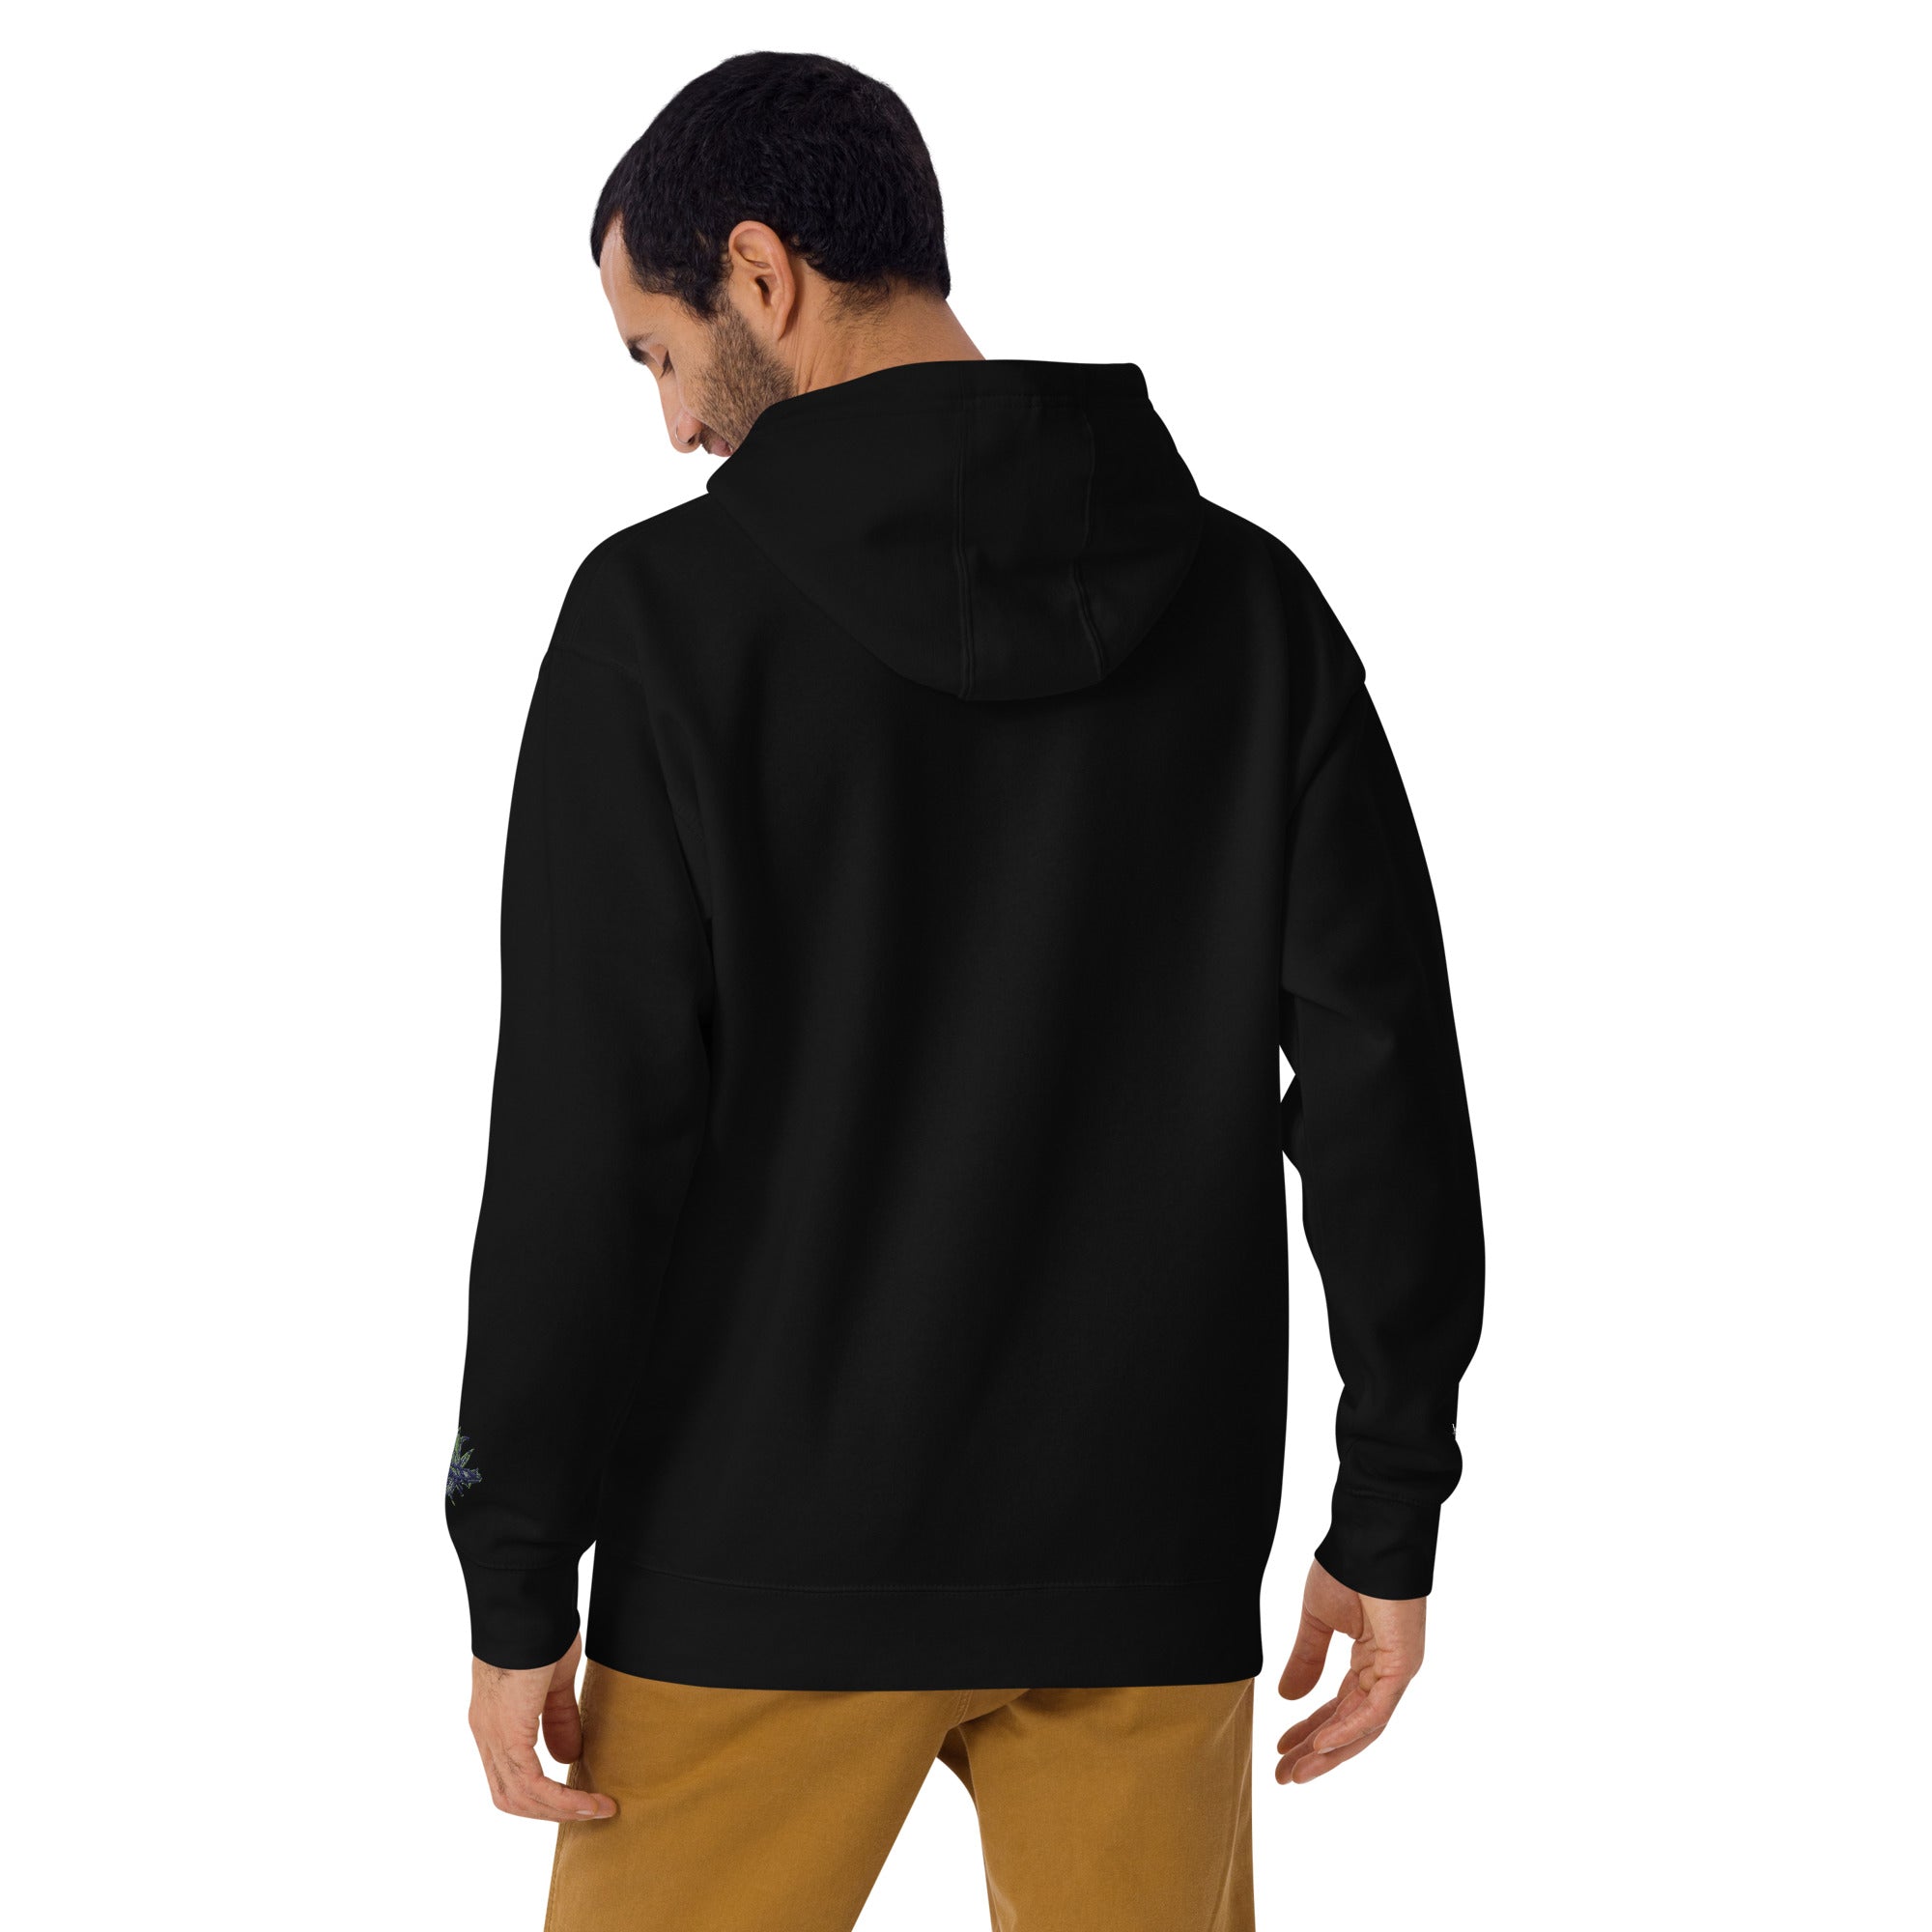 Black 420 hoodie 